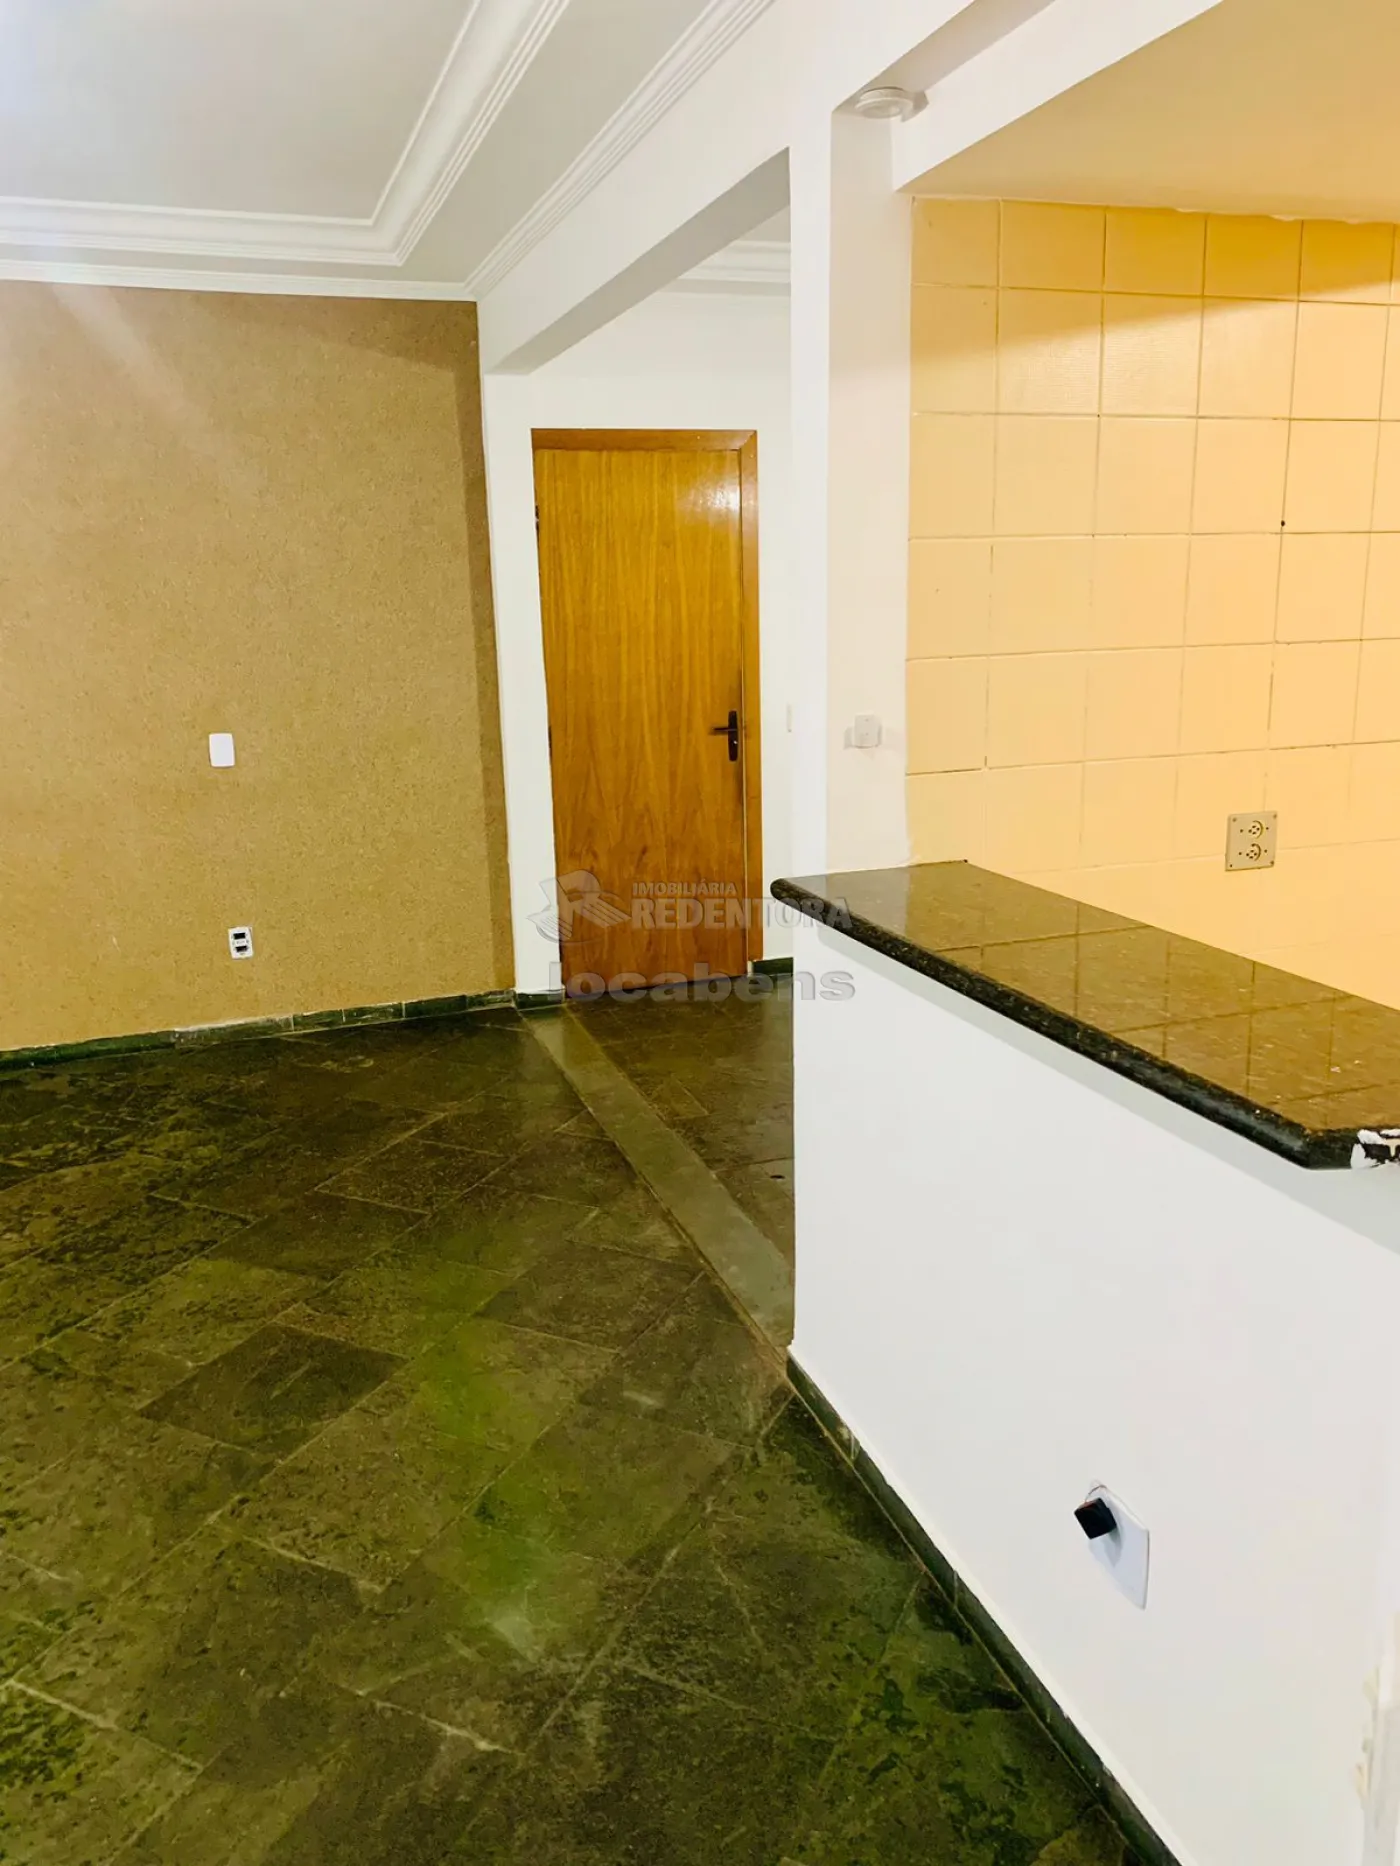 Alugar Apartamento / Padrão em São José do Rio Preto R$ 421,36 - Foto 2